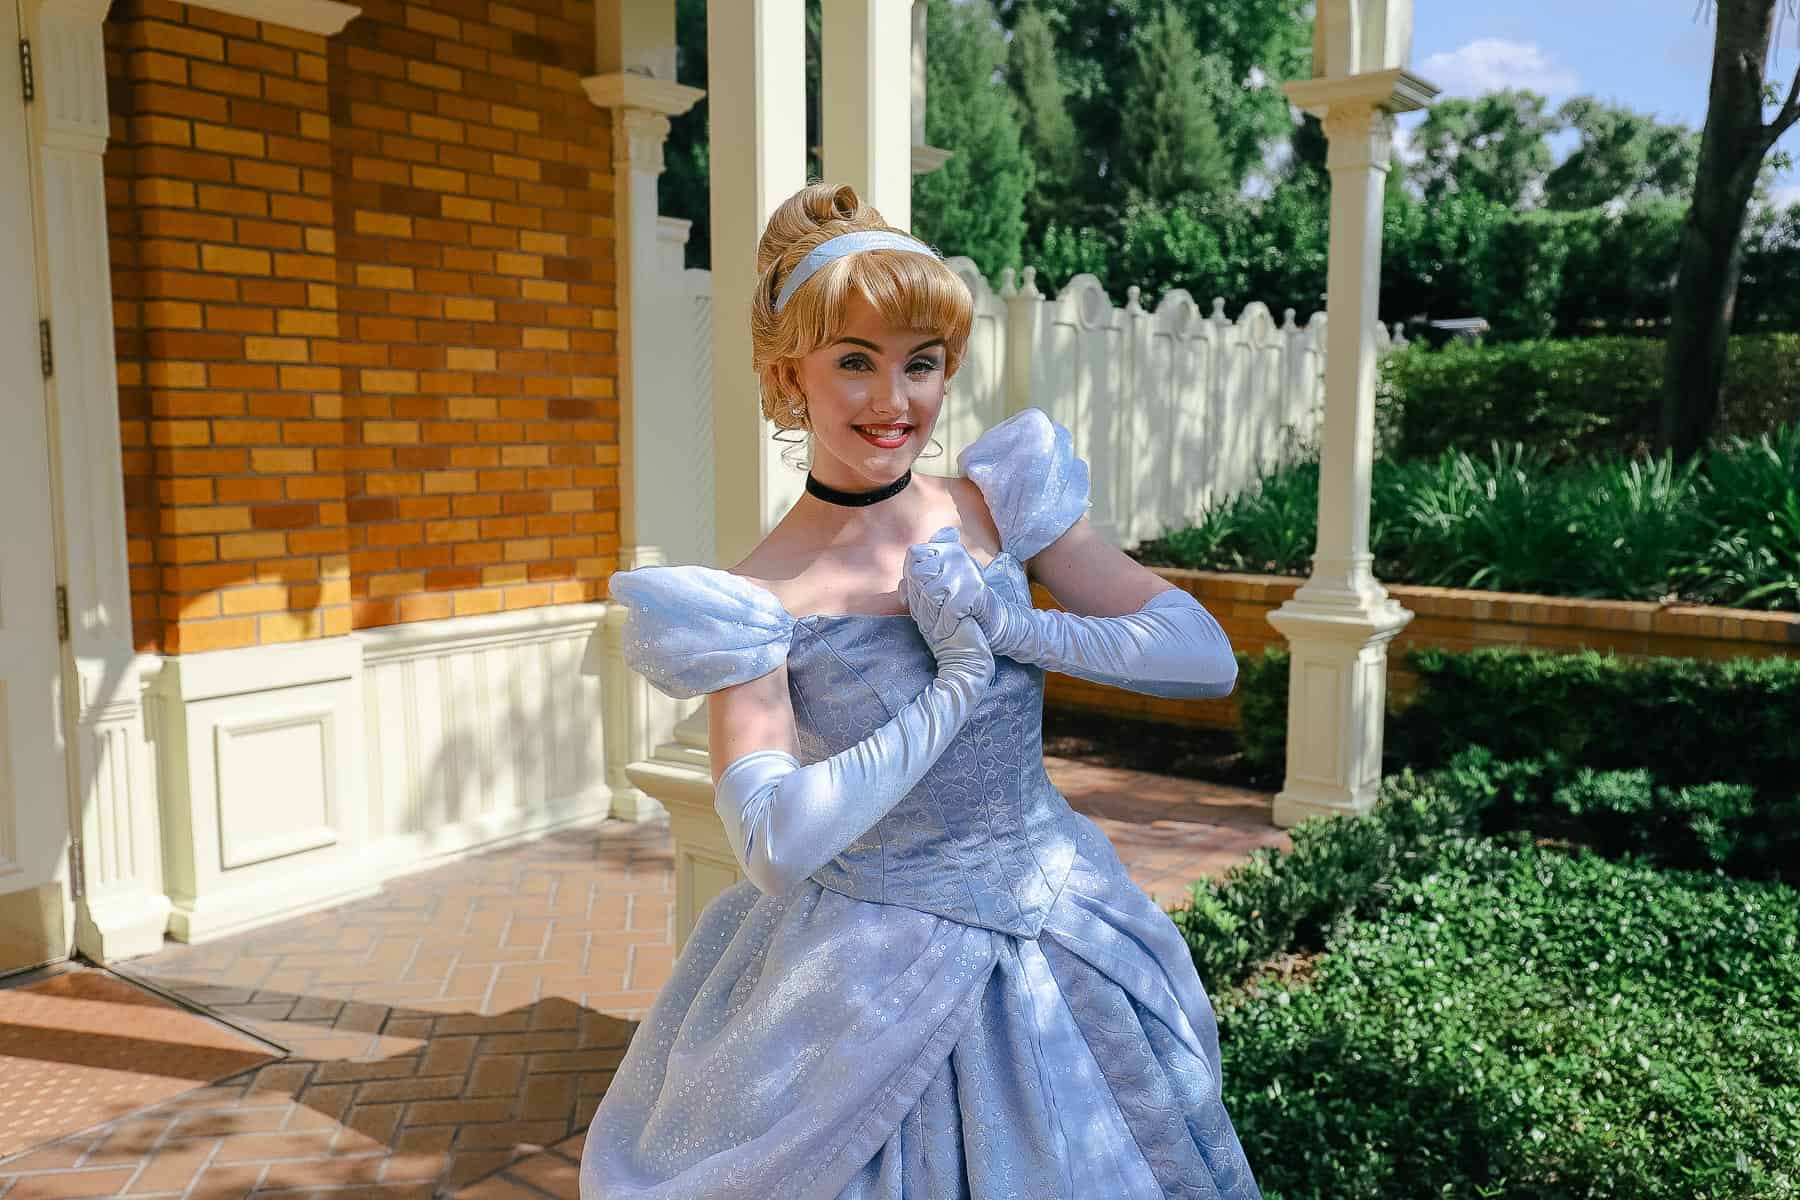 Cinderella meeting as a character at Disney World.